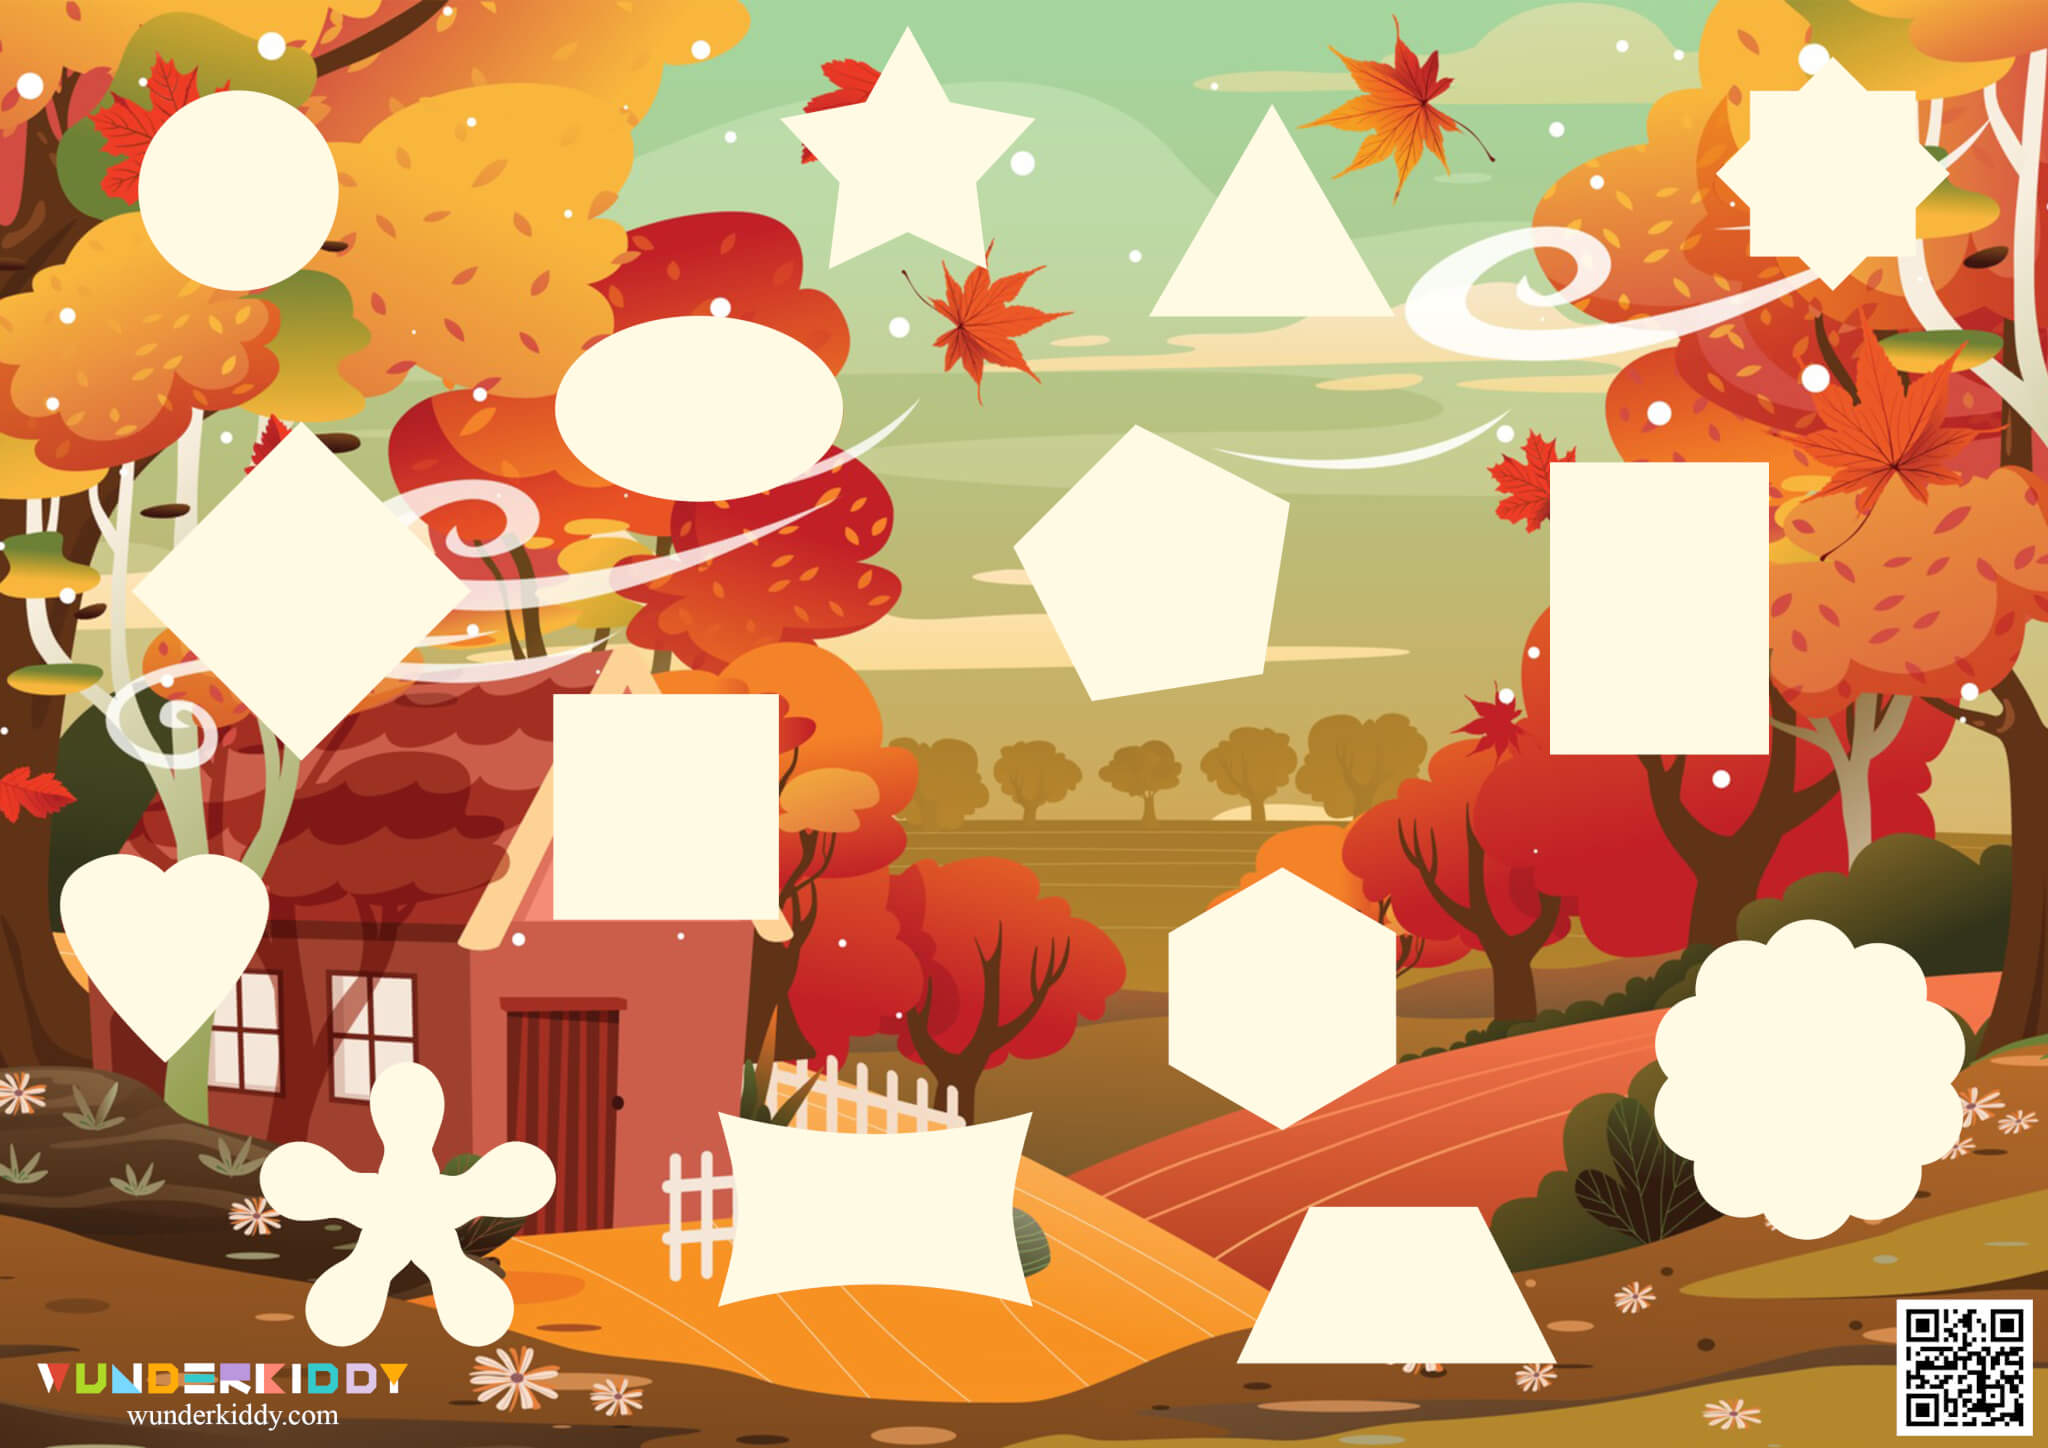 Activity sheet «Autumn puzzle»